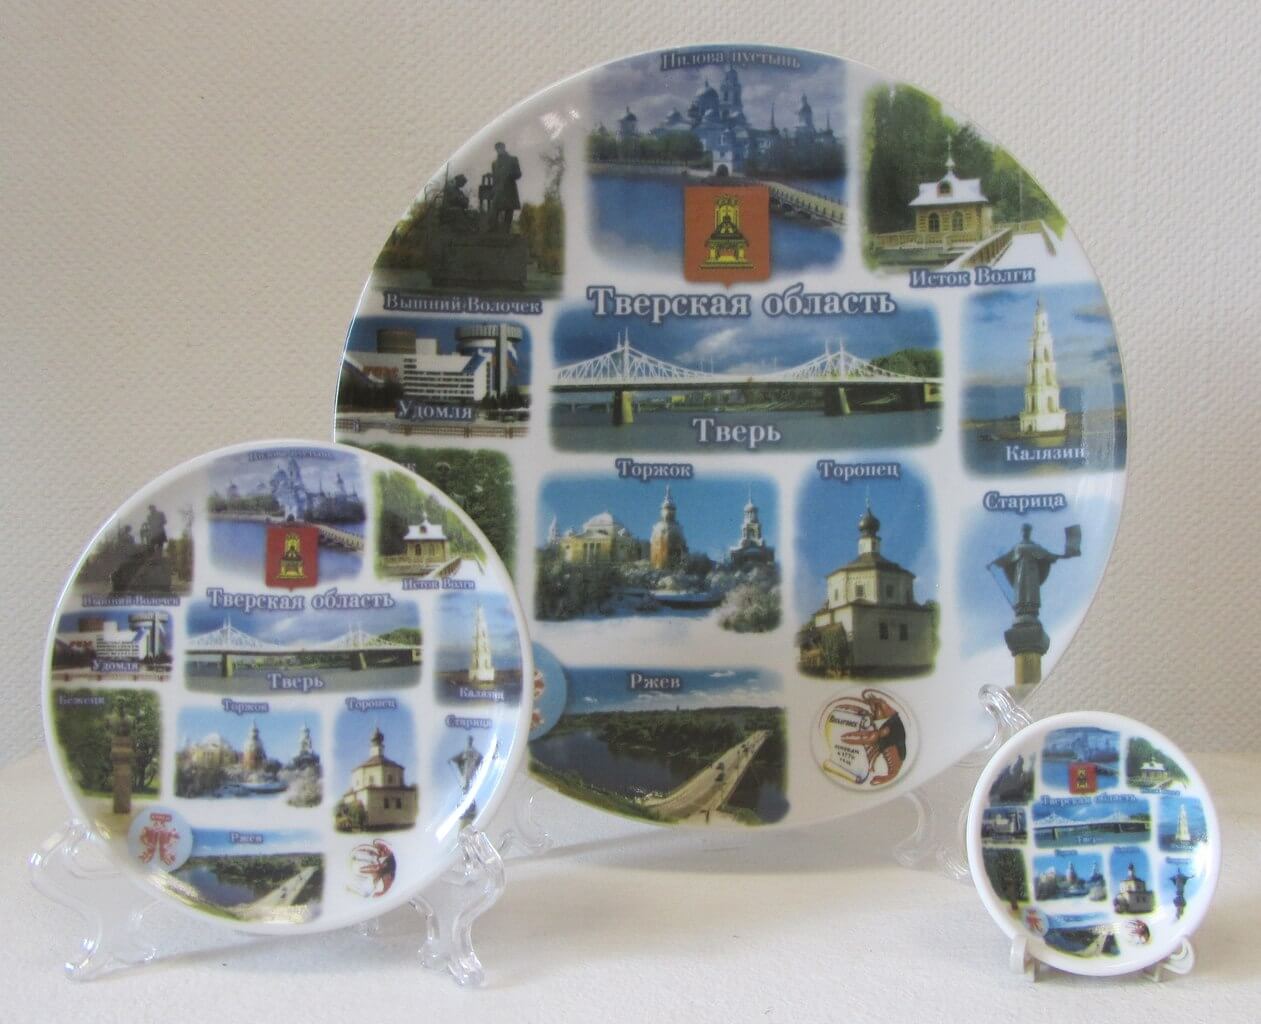 К туристическому сезону 2013 года в Твери был создан новый вид сувернирной продукции - тарелочки "Города Тверской области"